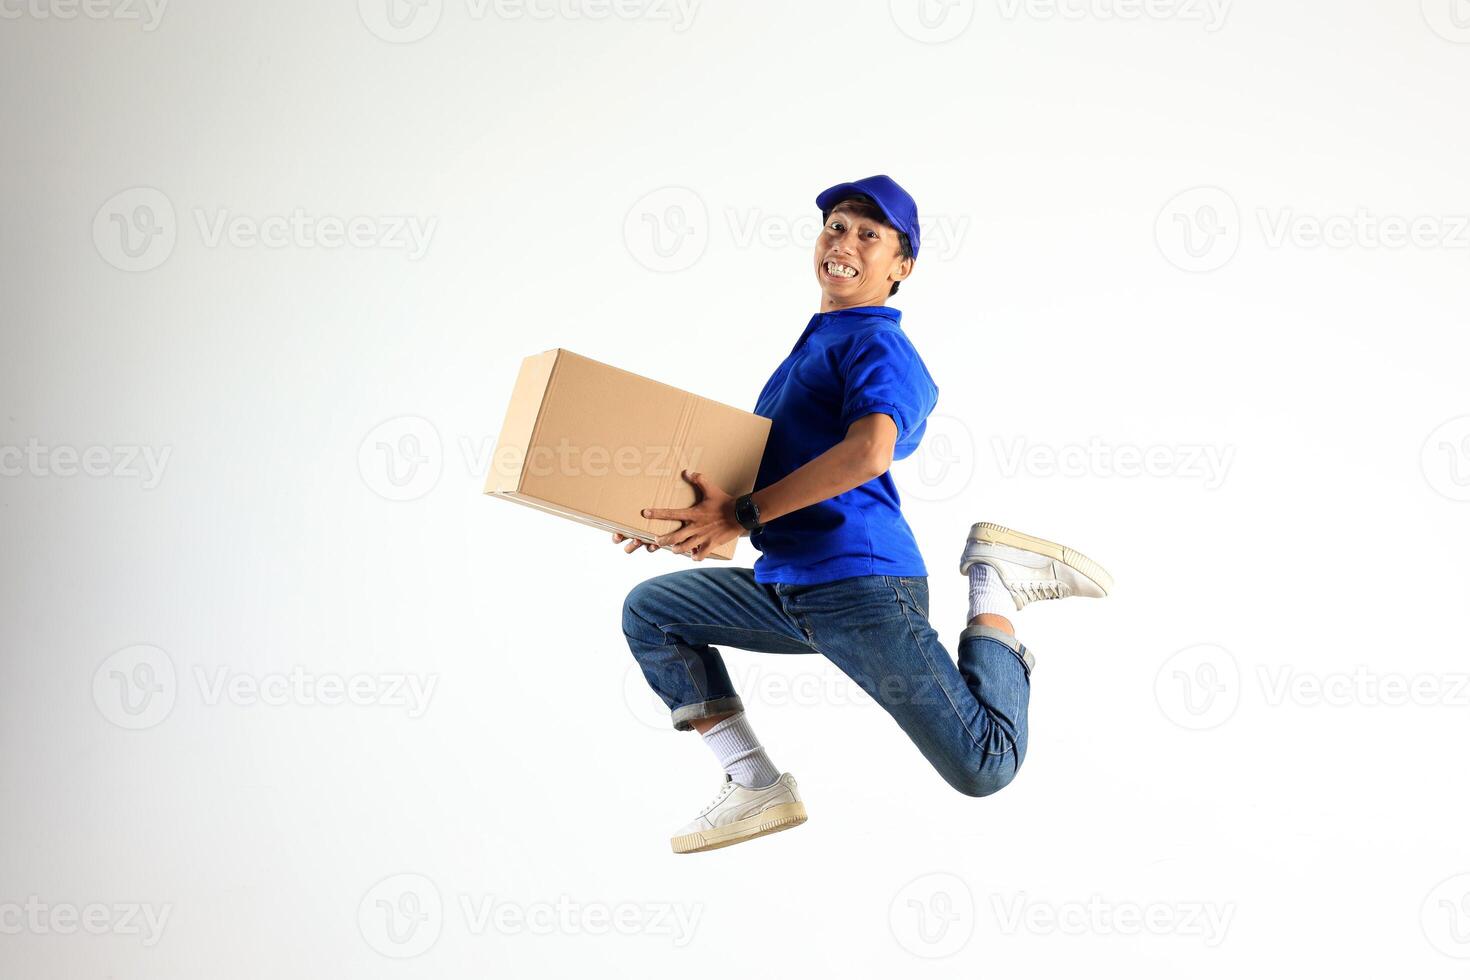 masculino Entrega correio pulando com cartão boax, envio pacote conceito foto